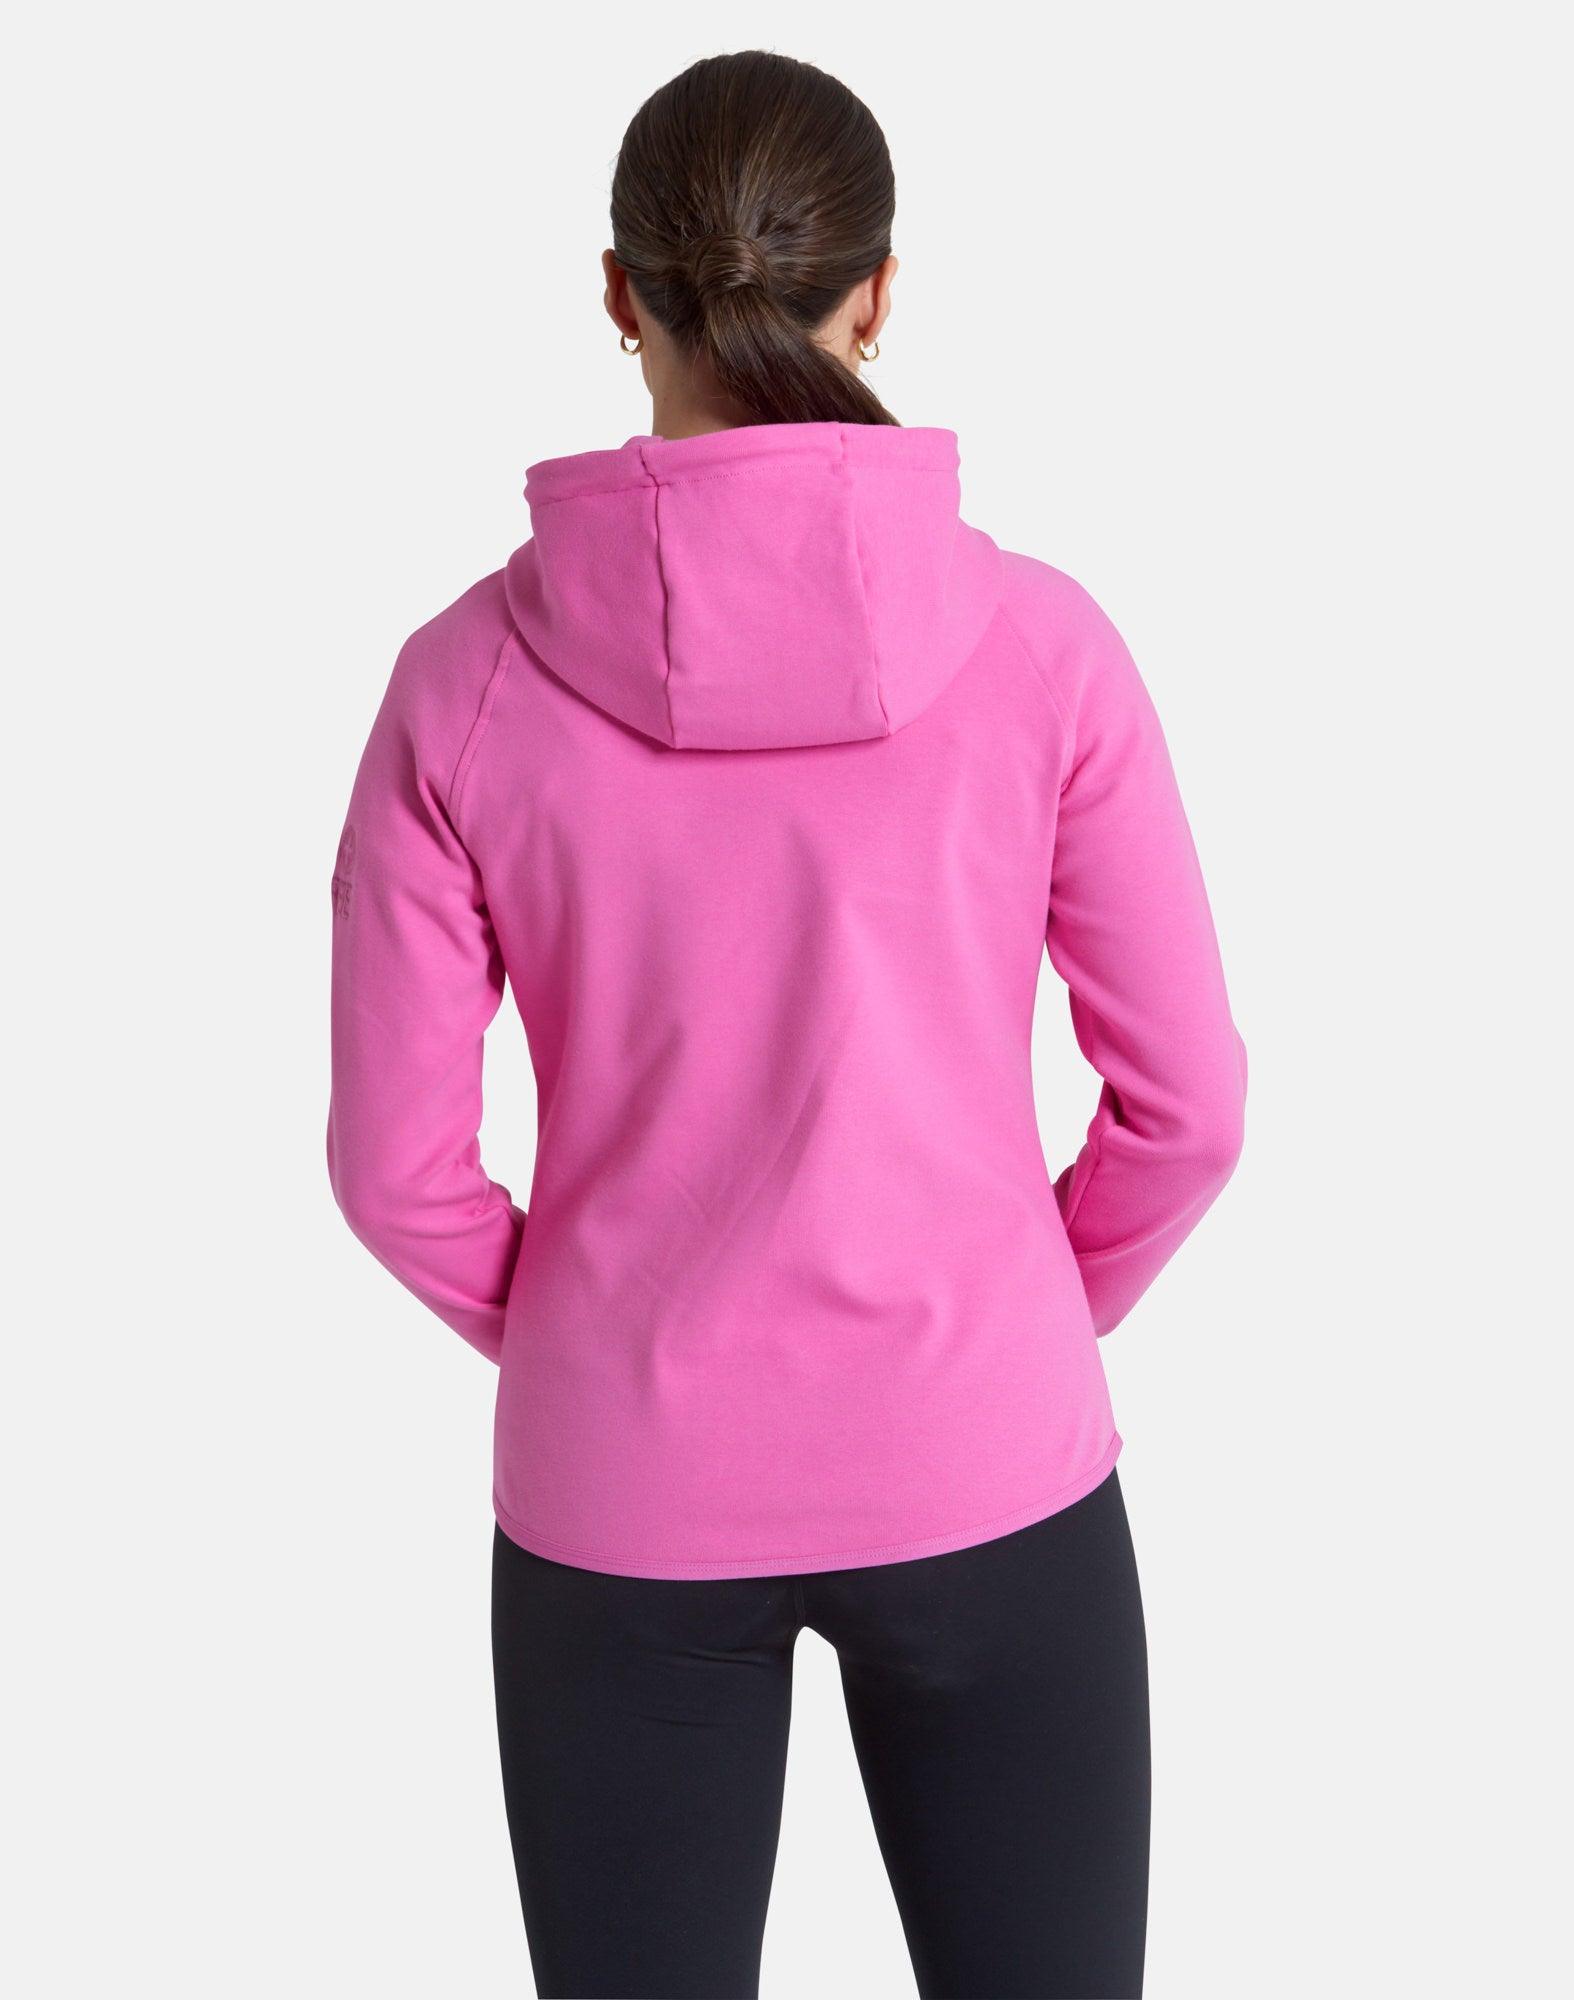 Essential Zip Hoodie in Empower Pink - Hoodies - Gym+Coffee